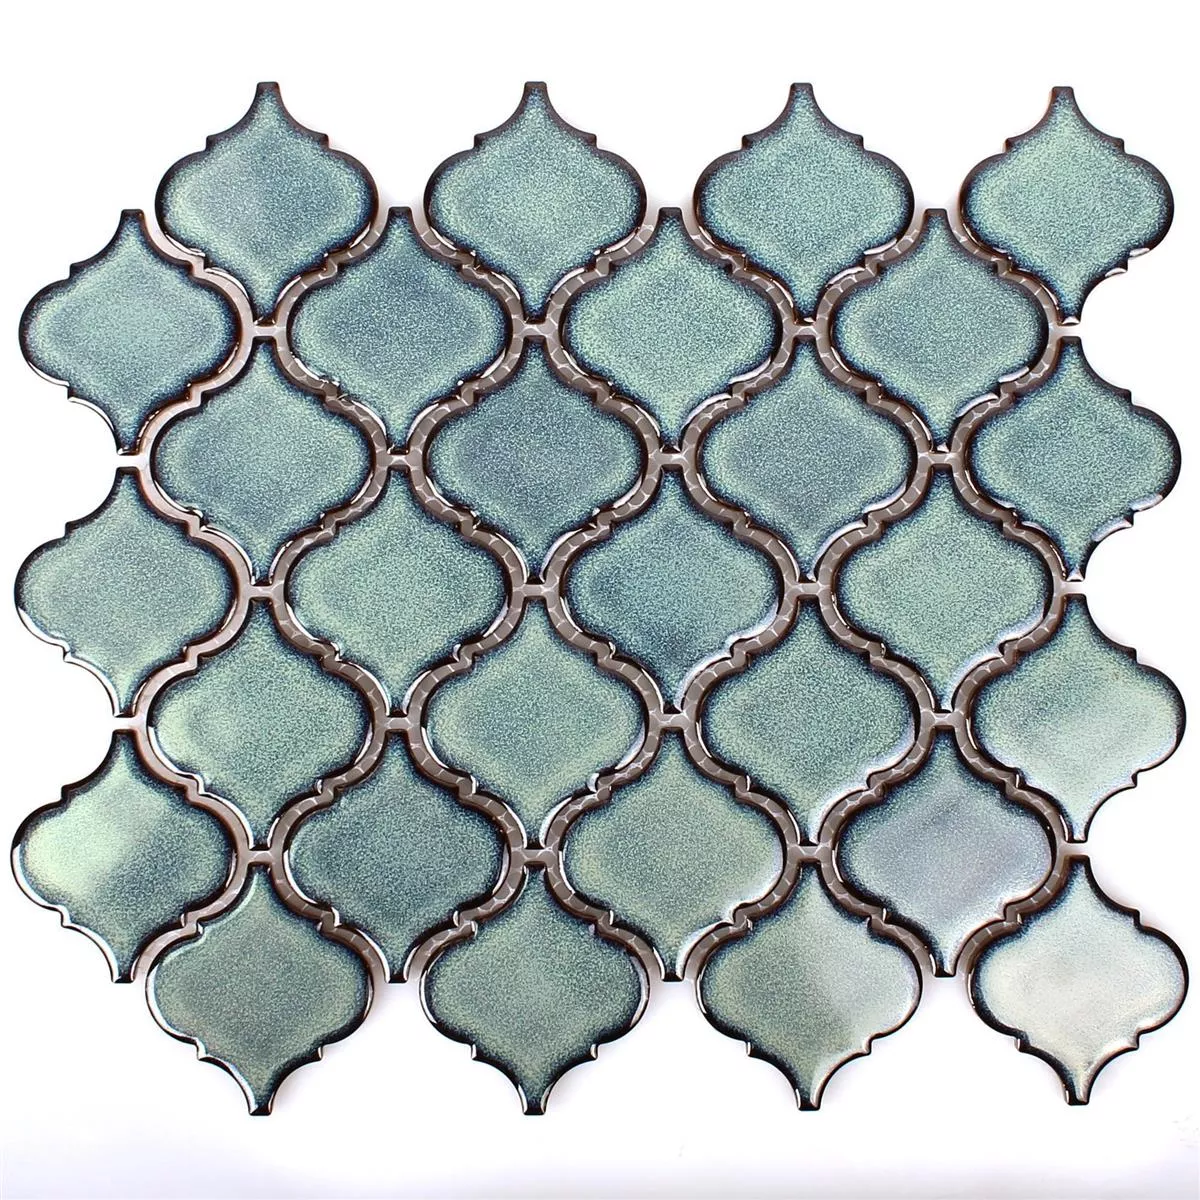 Campione Ceramica Mosaico Trier Florentiner Blu